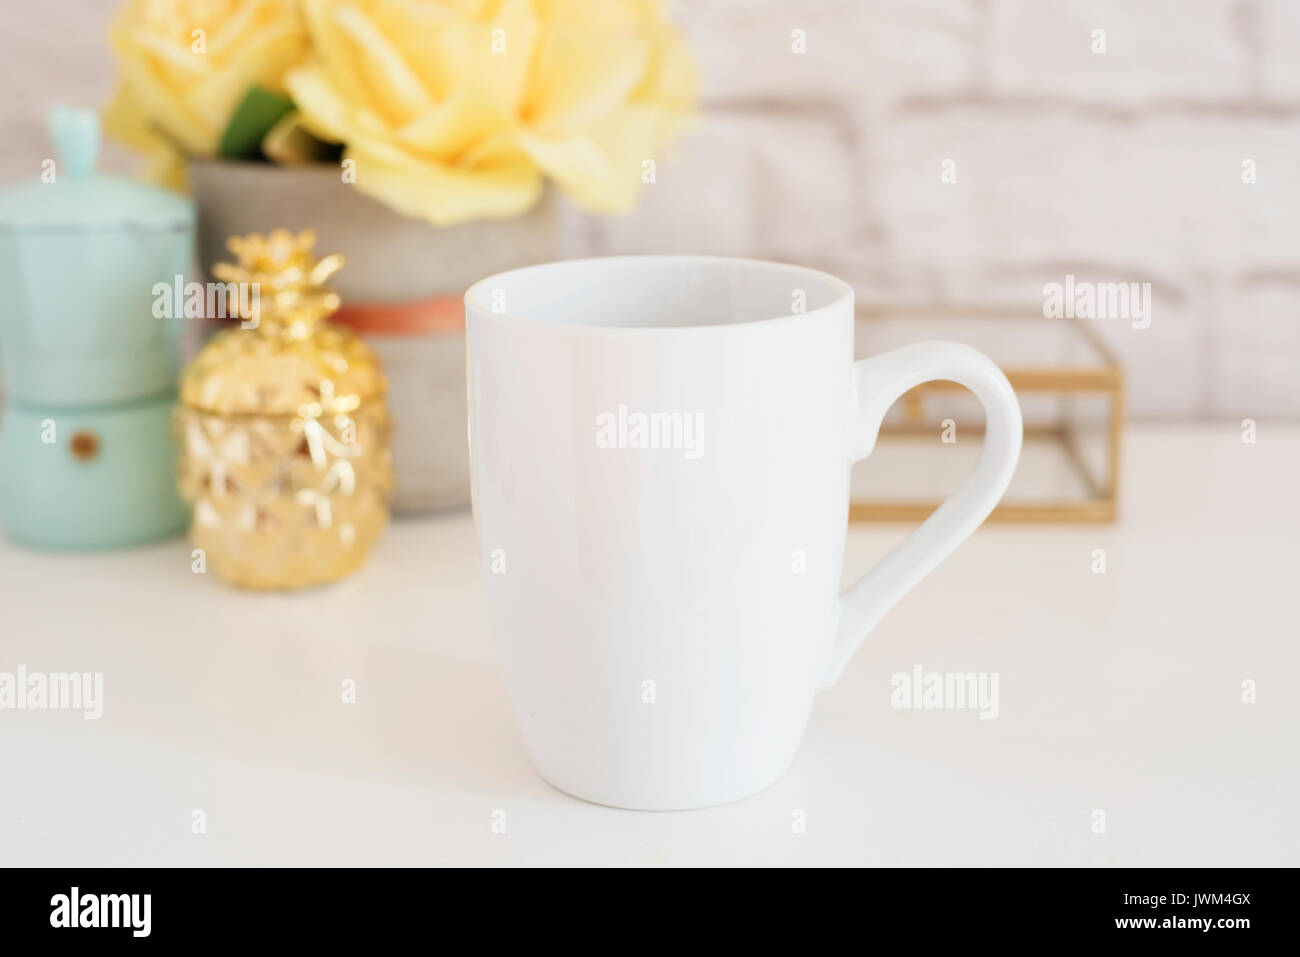 Download Mug Mockup Coffee Cup Template Coffee Mug Printing Design Template White Mug Mockup Blank Mug Product Image Styled Stock Photography White Coffee Stock Photo Alamy